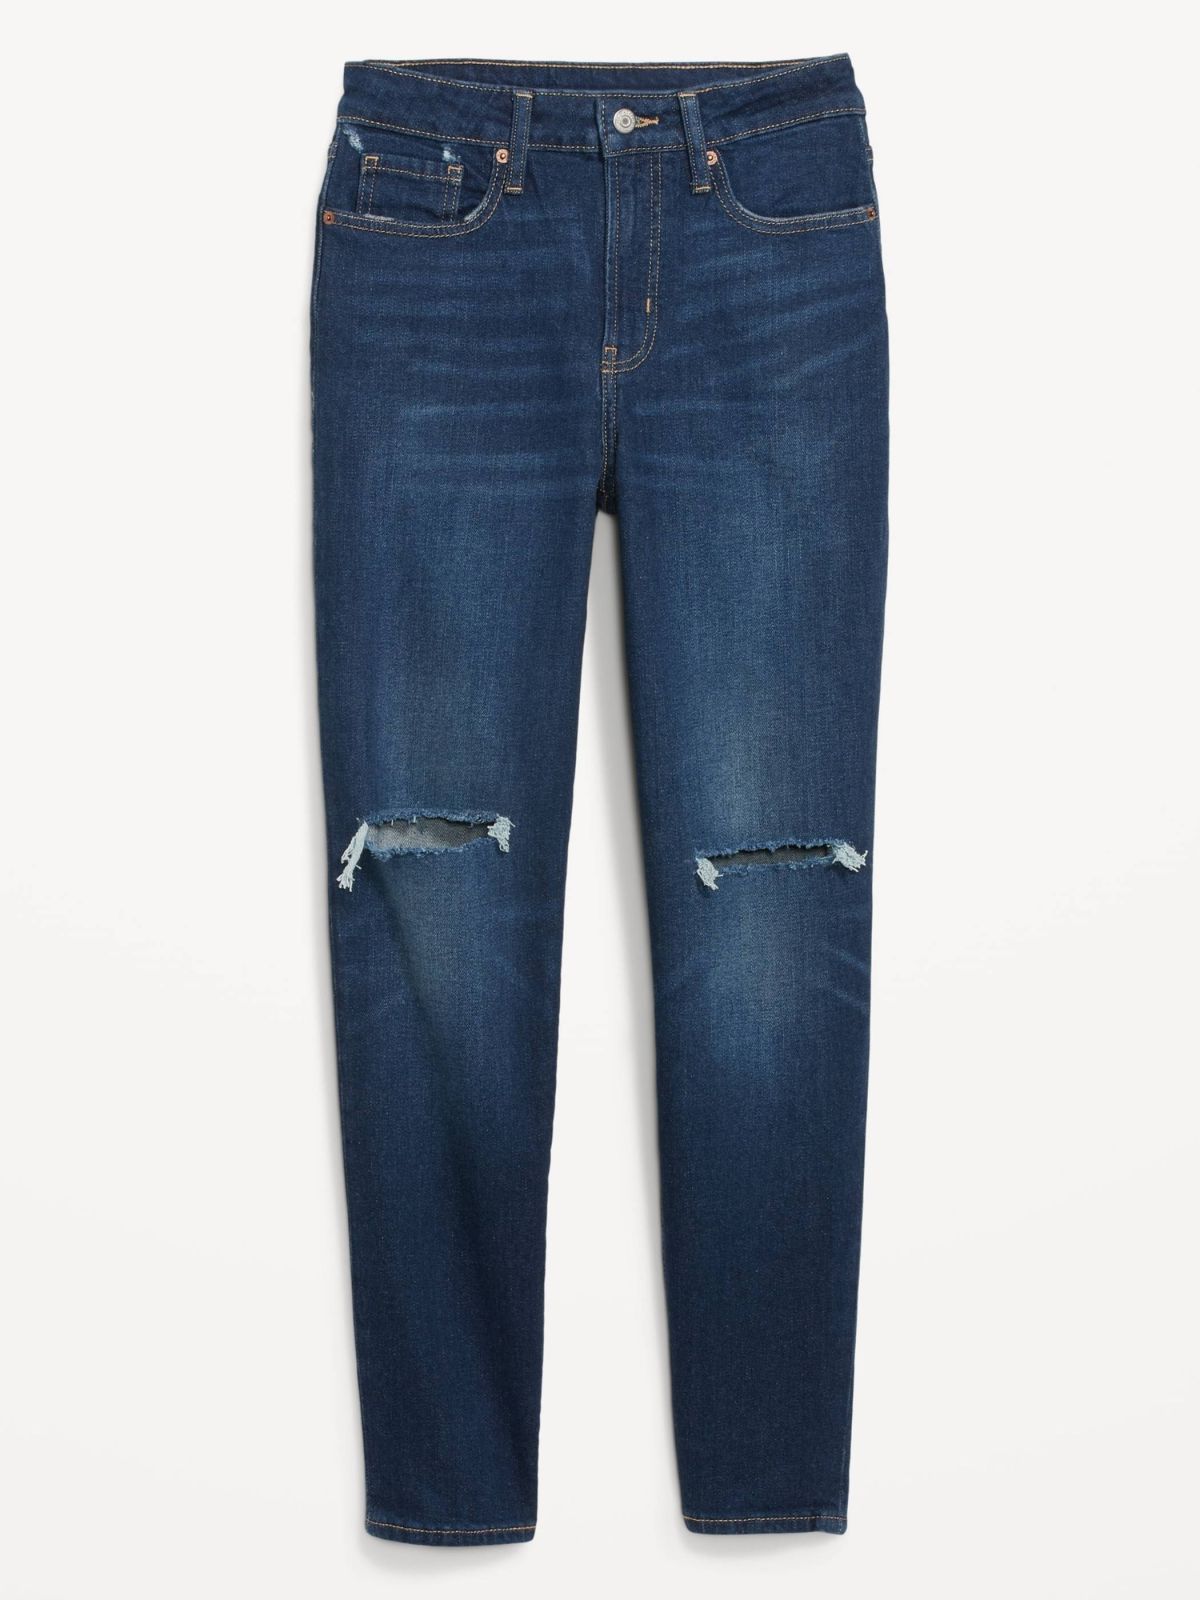  ג'ינס ארוך עם עיטורי קרעים של OLD NAVY